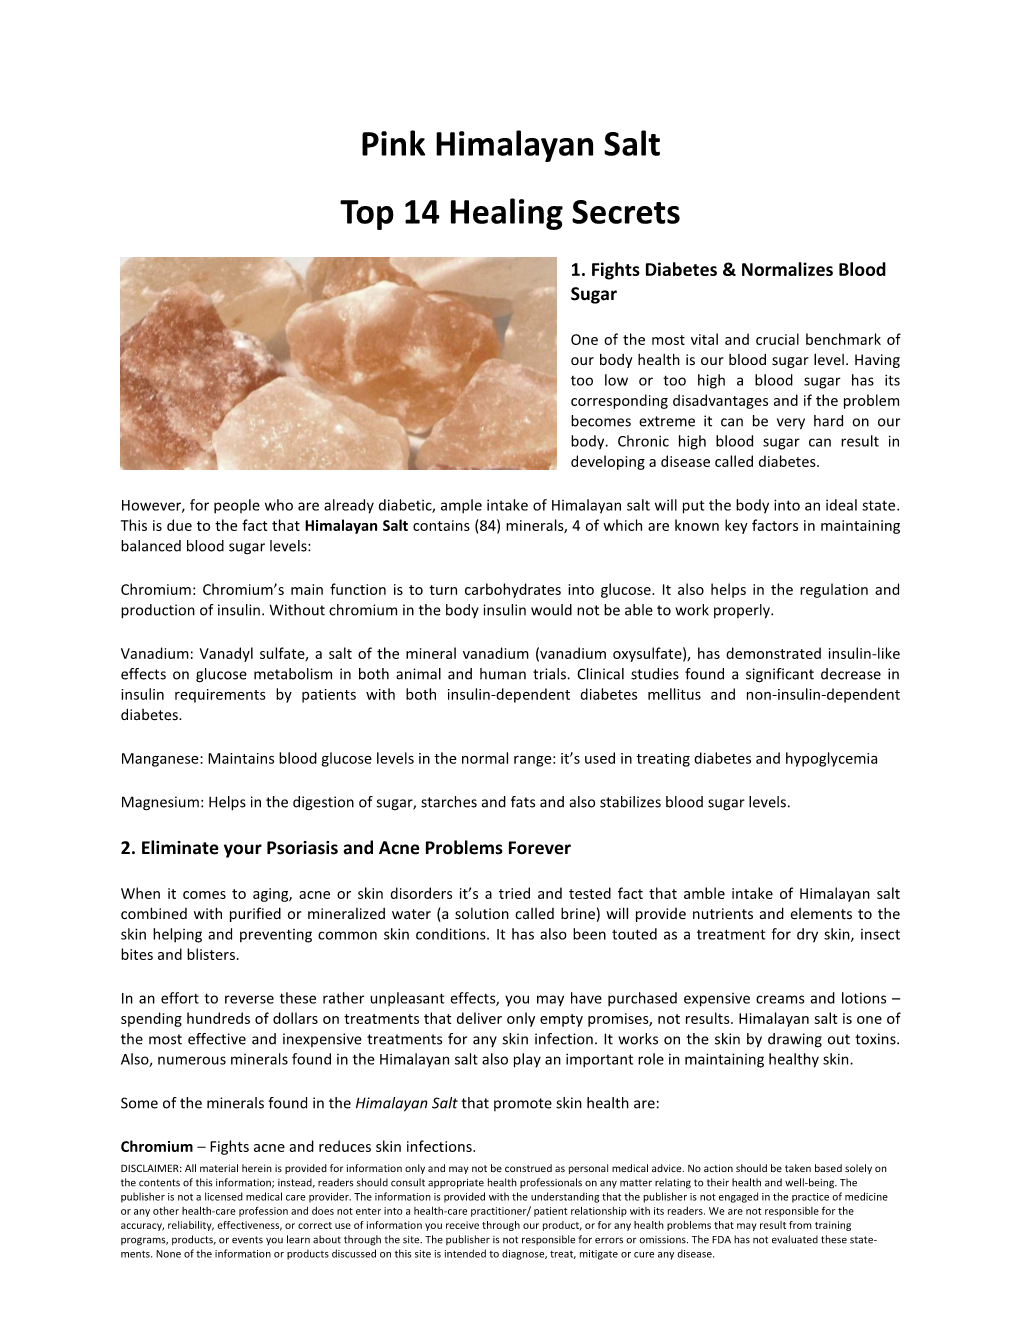 Pink Himalayan Salt Top 14 Healing Secrets